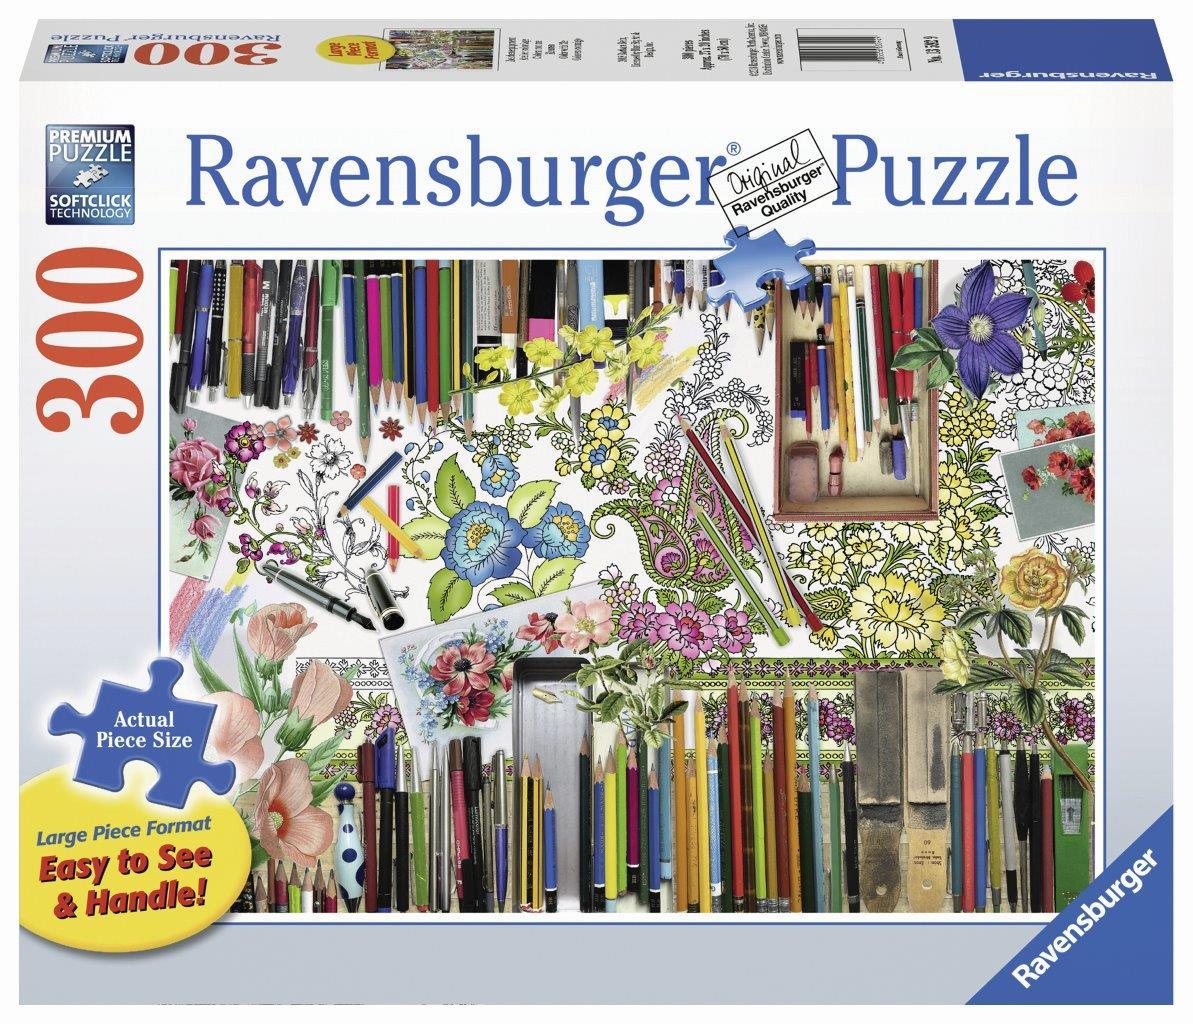 Color With Me Puzzle Lge Format 300pc (Ravensburger Puzzle)